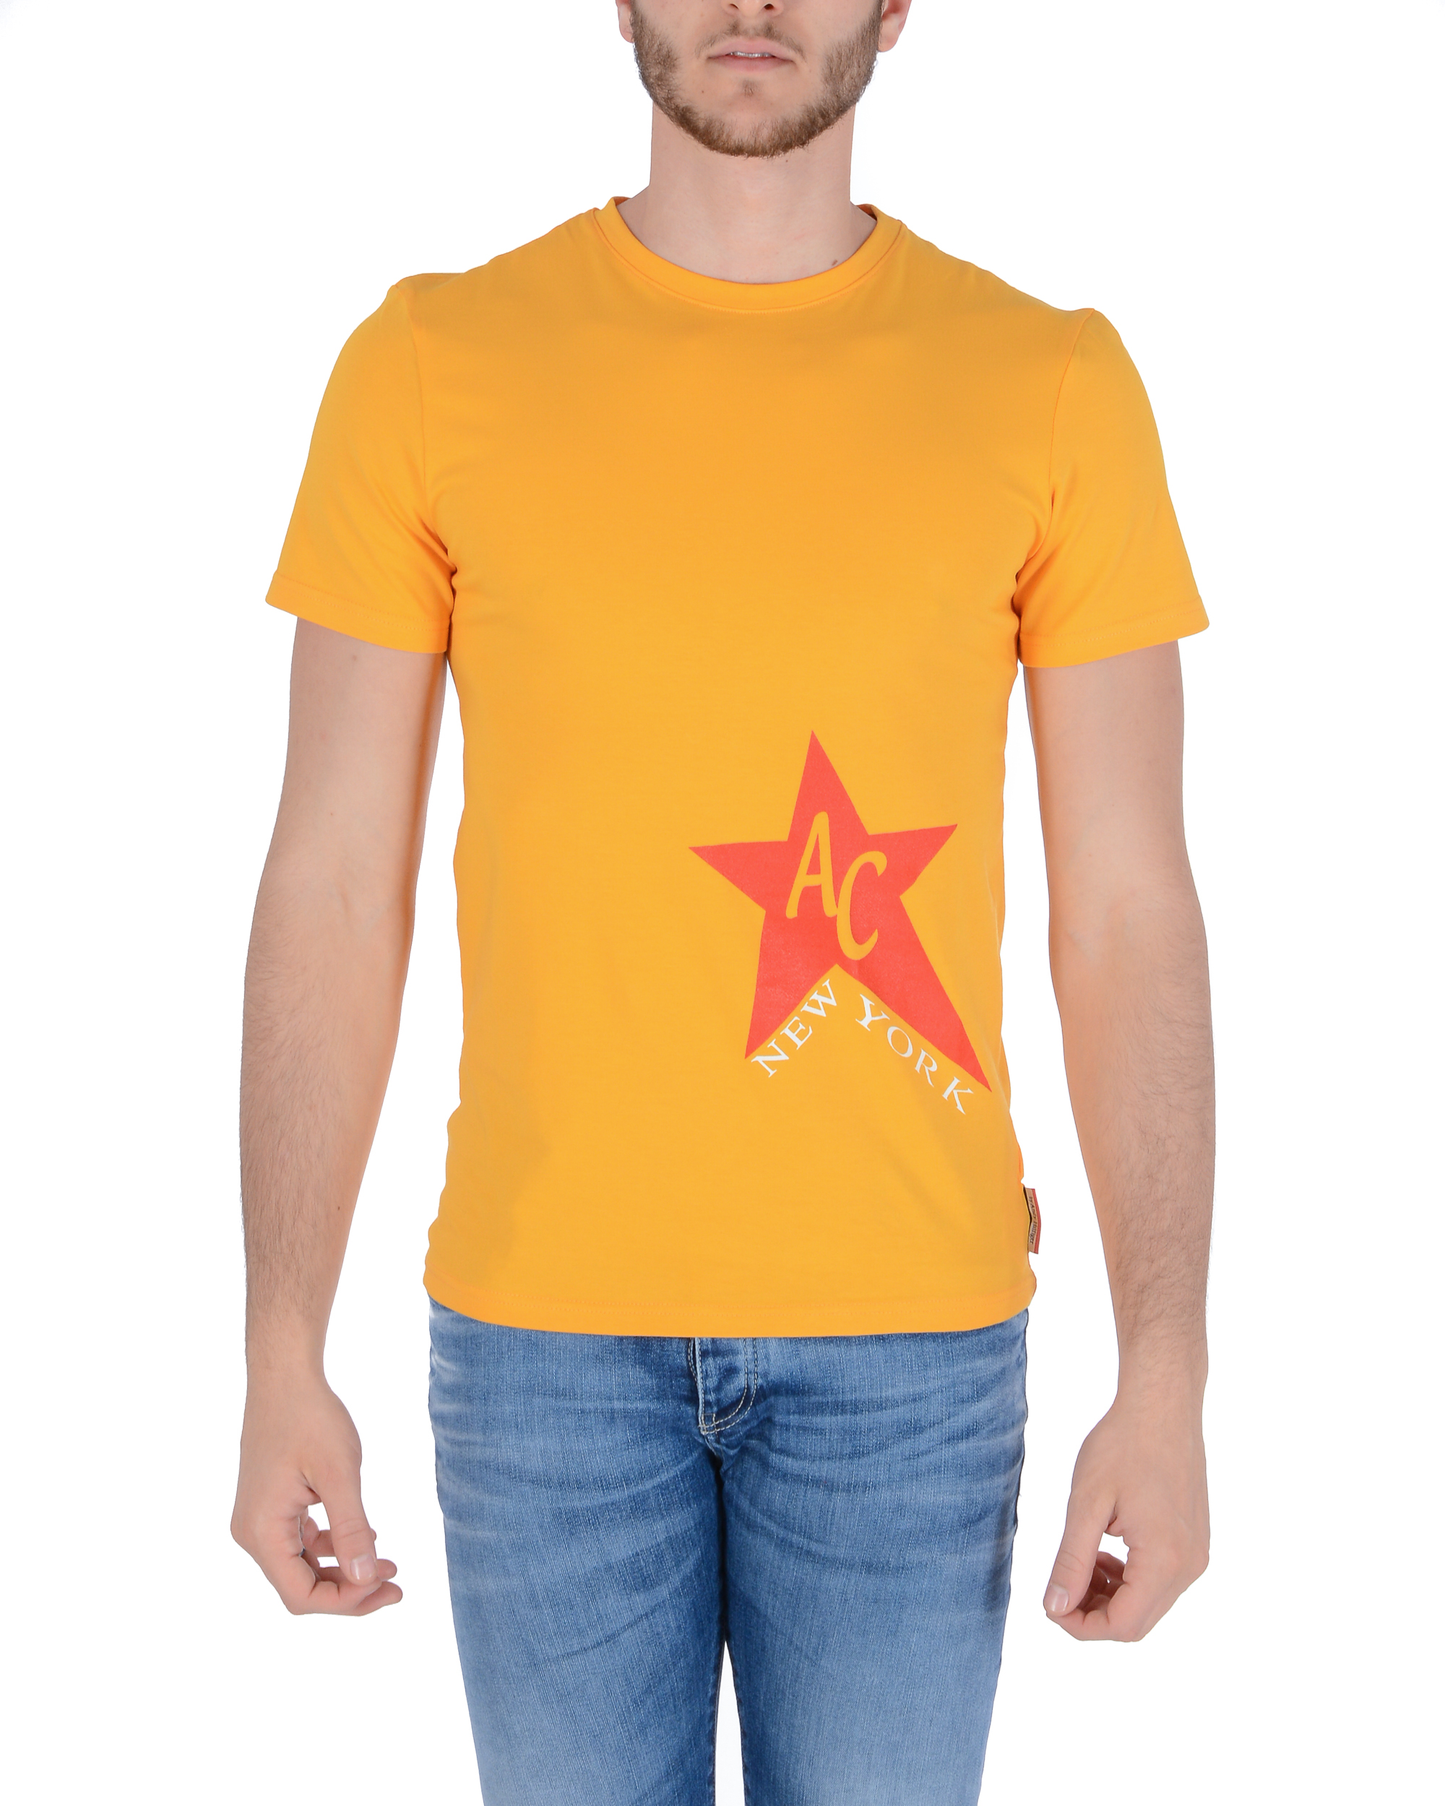 Andrew Charles Mens T-Shirt KEITA YELLOW S6